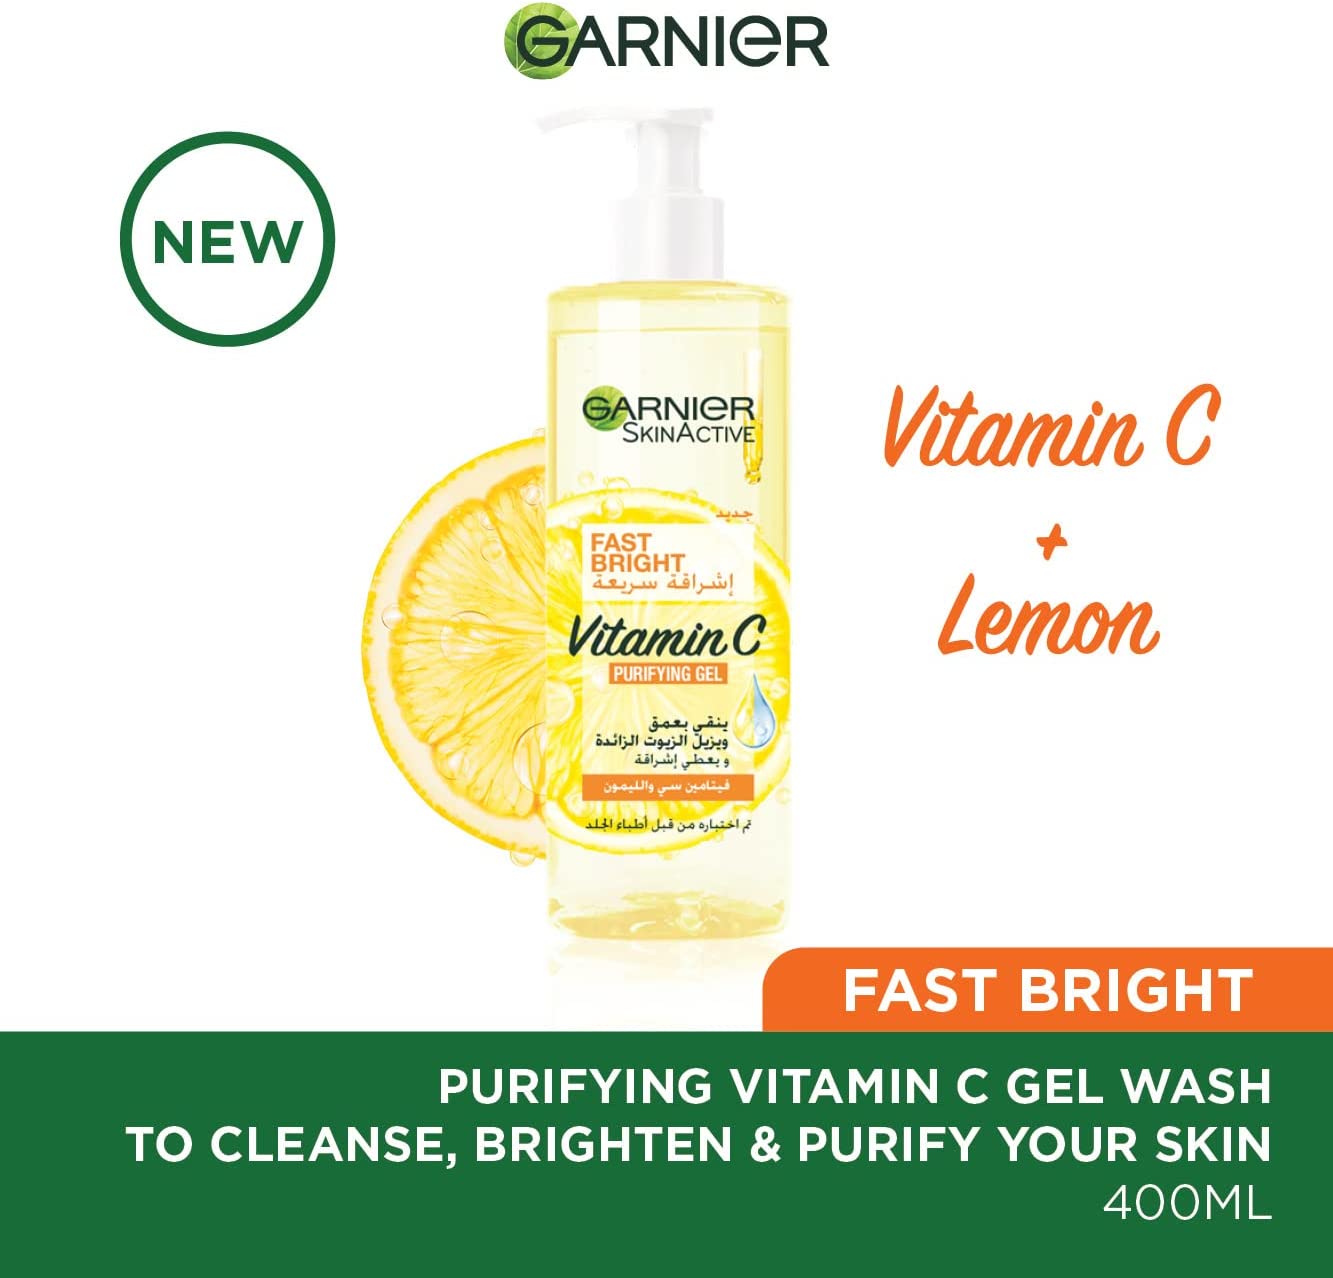 Garnier Fast Bright Vitamin C Purifying Gel Wash 400ml - ZYNAH Egypt